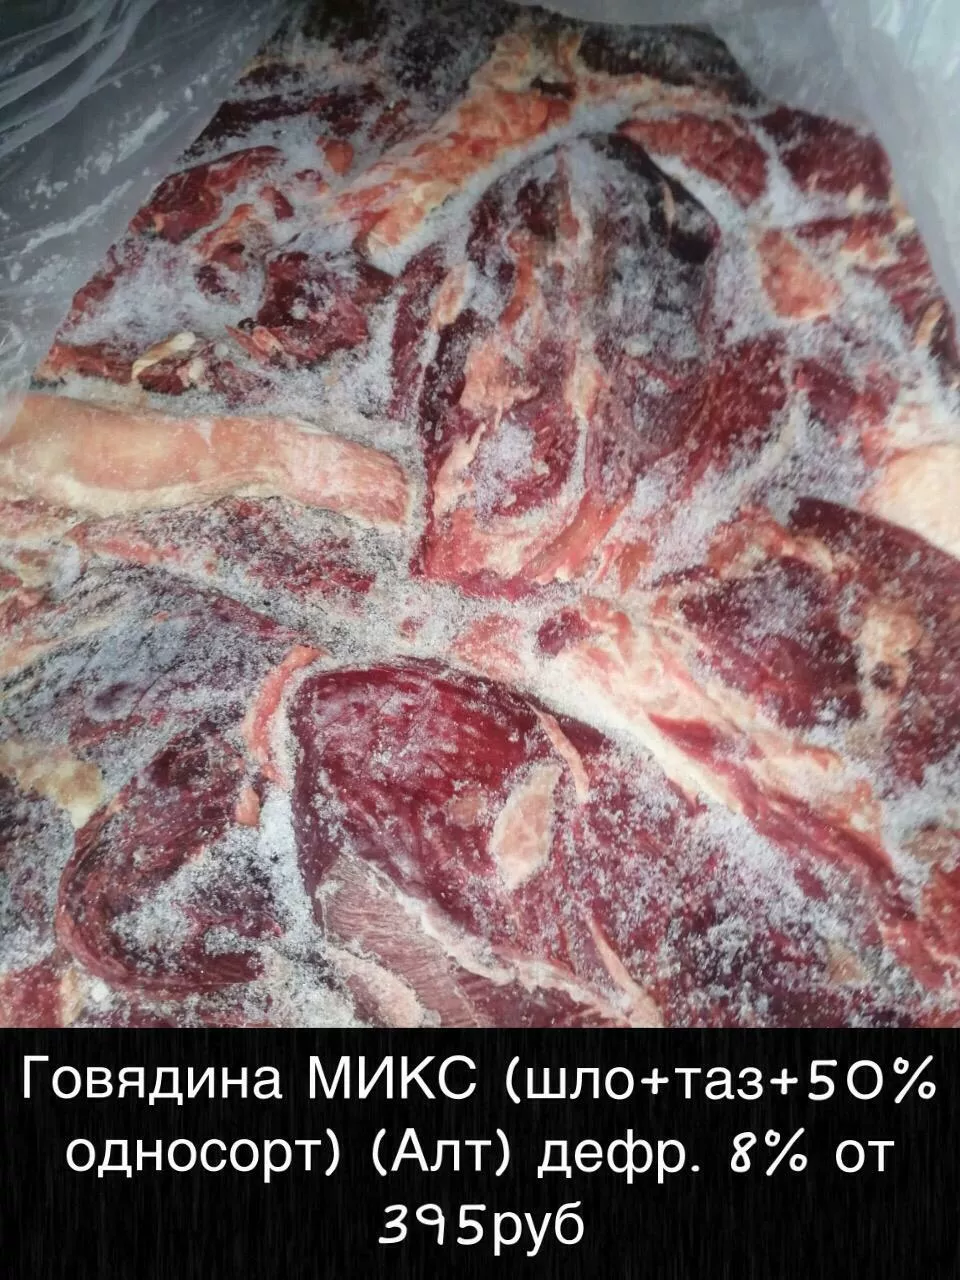 мясо - говядина и др. оптом! в Красноярске и Красноярском крае 4